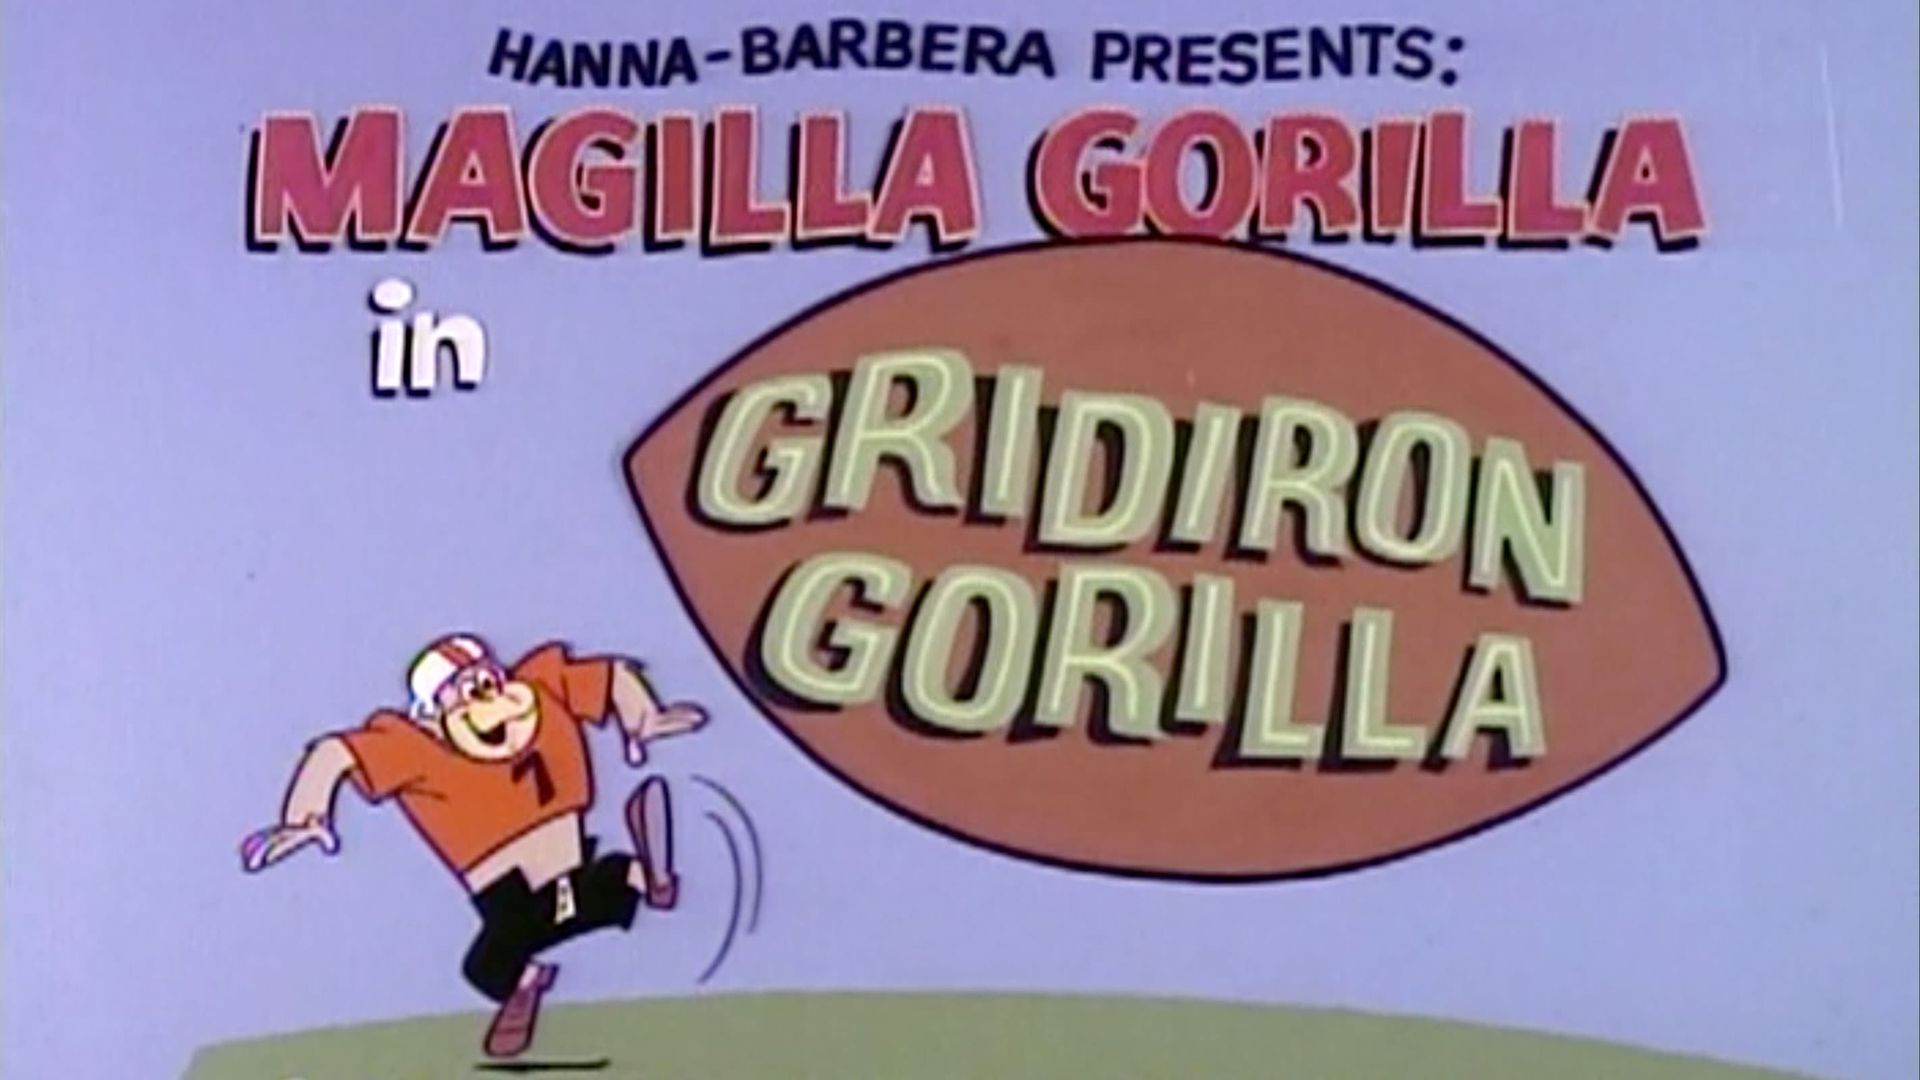 The Magilla Gorilla Show background